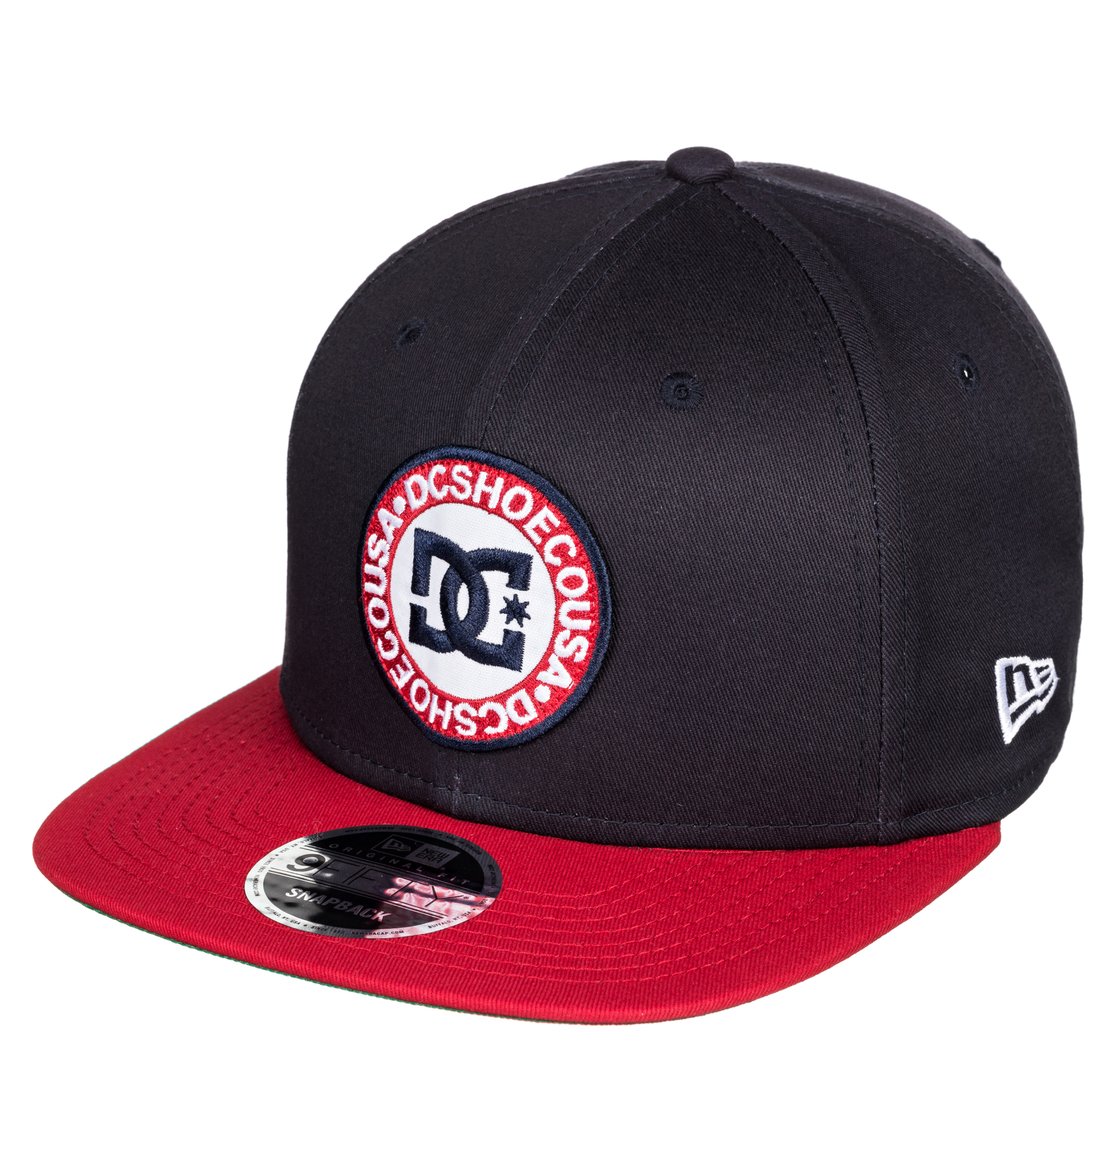 หมวก DC Cap Speedeater Snapback Hat - Black Iris [ADYHA03550-BTL0]